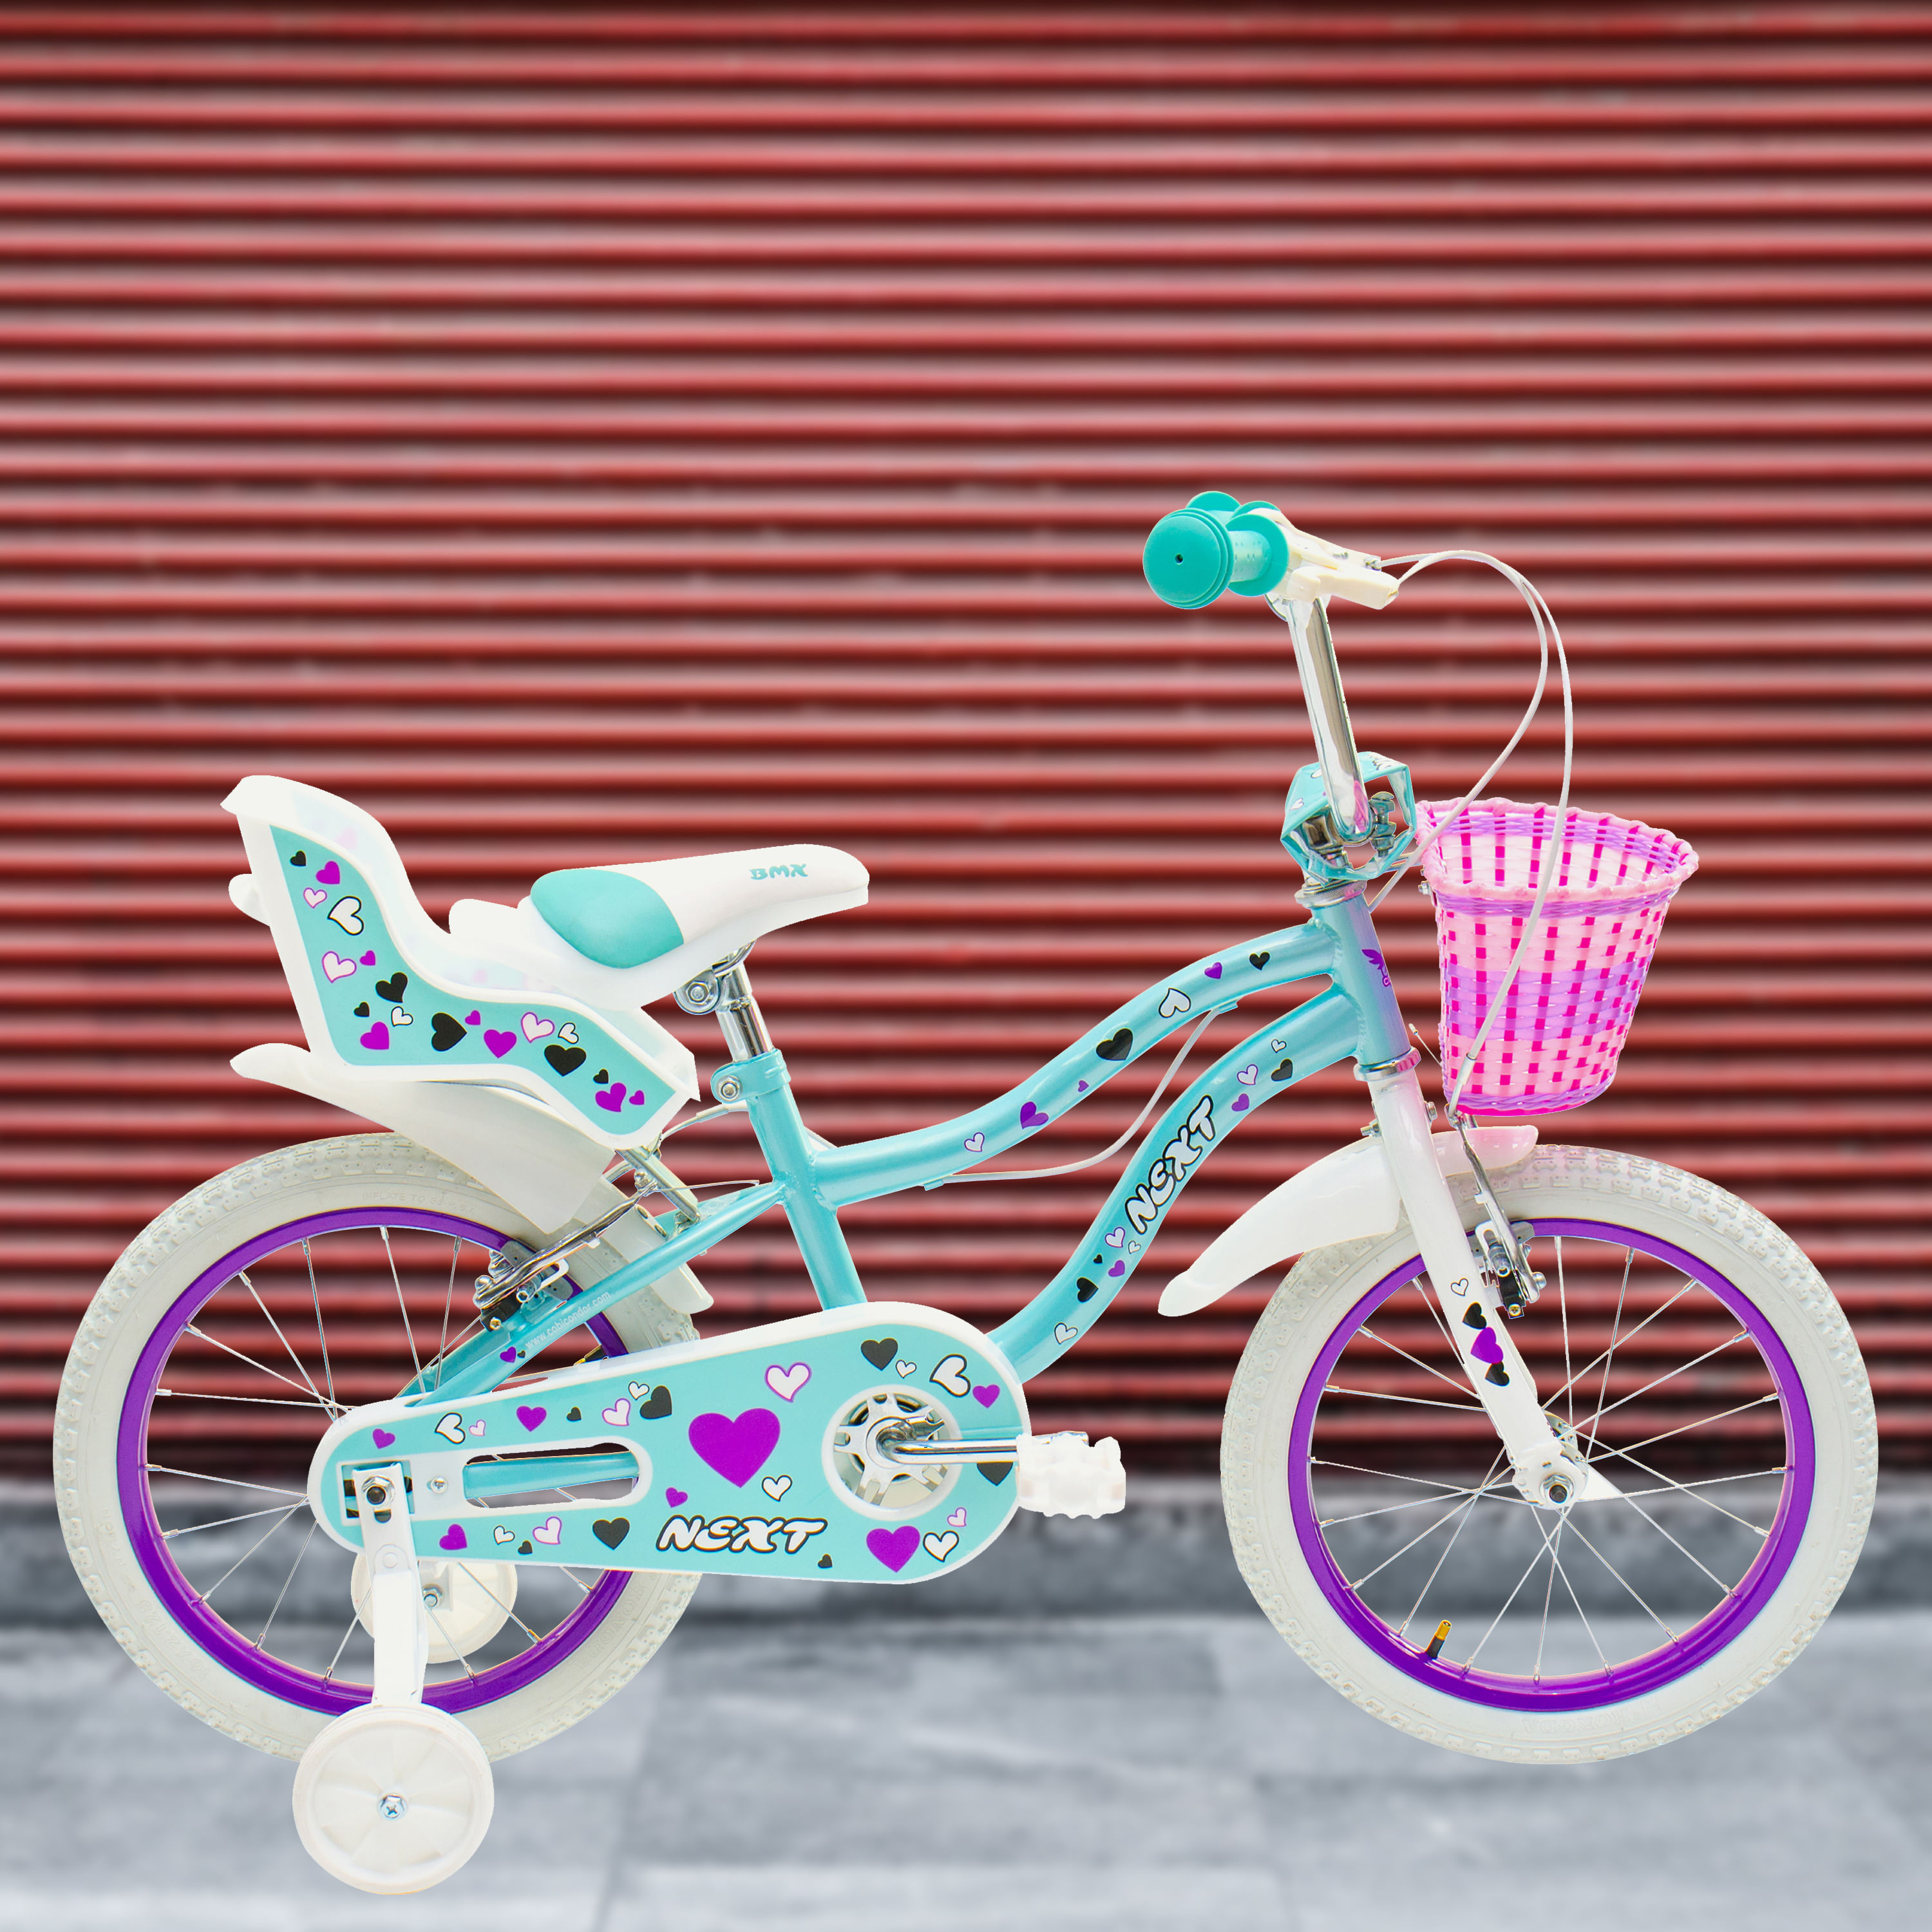 Comprar Bicicleta Next Bmx 16 para niñas de 6 a 8 años Modelo NEB160M